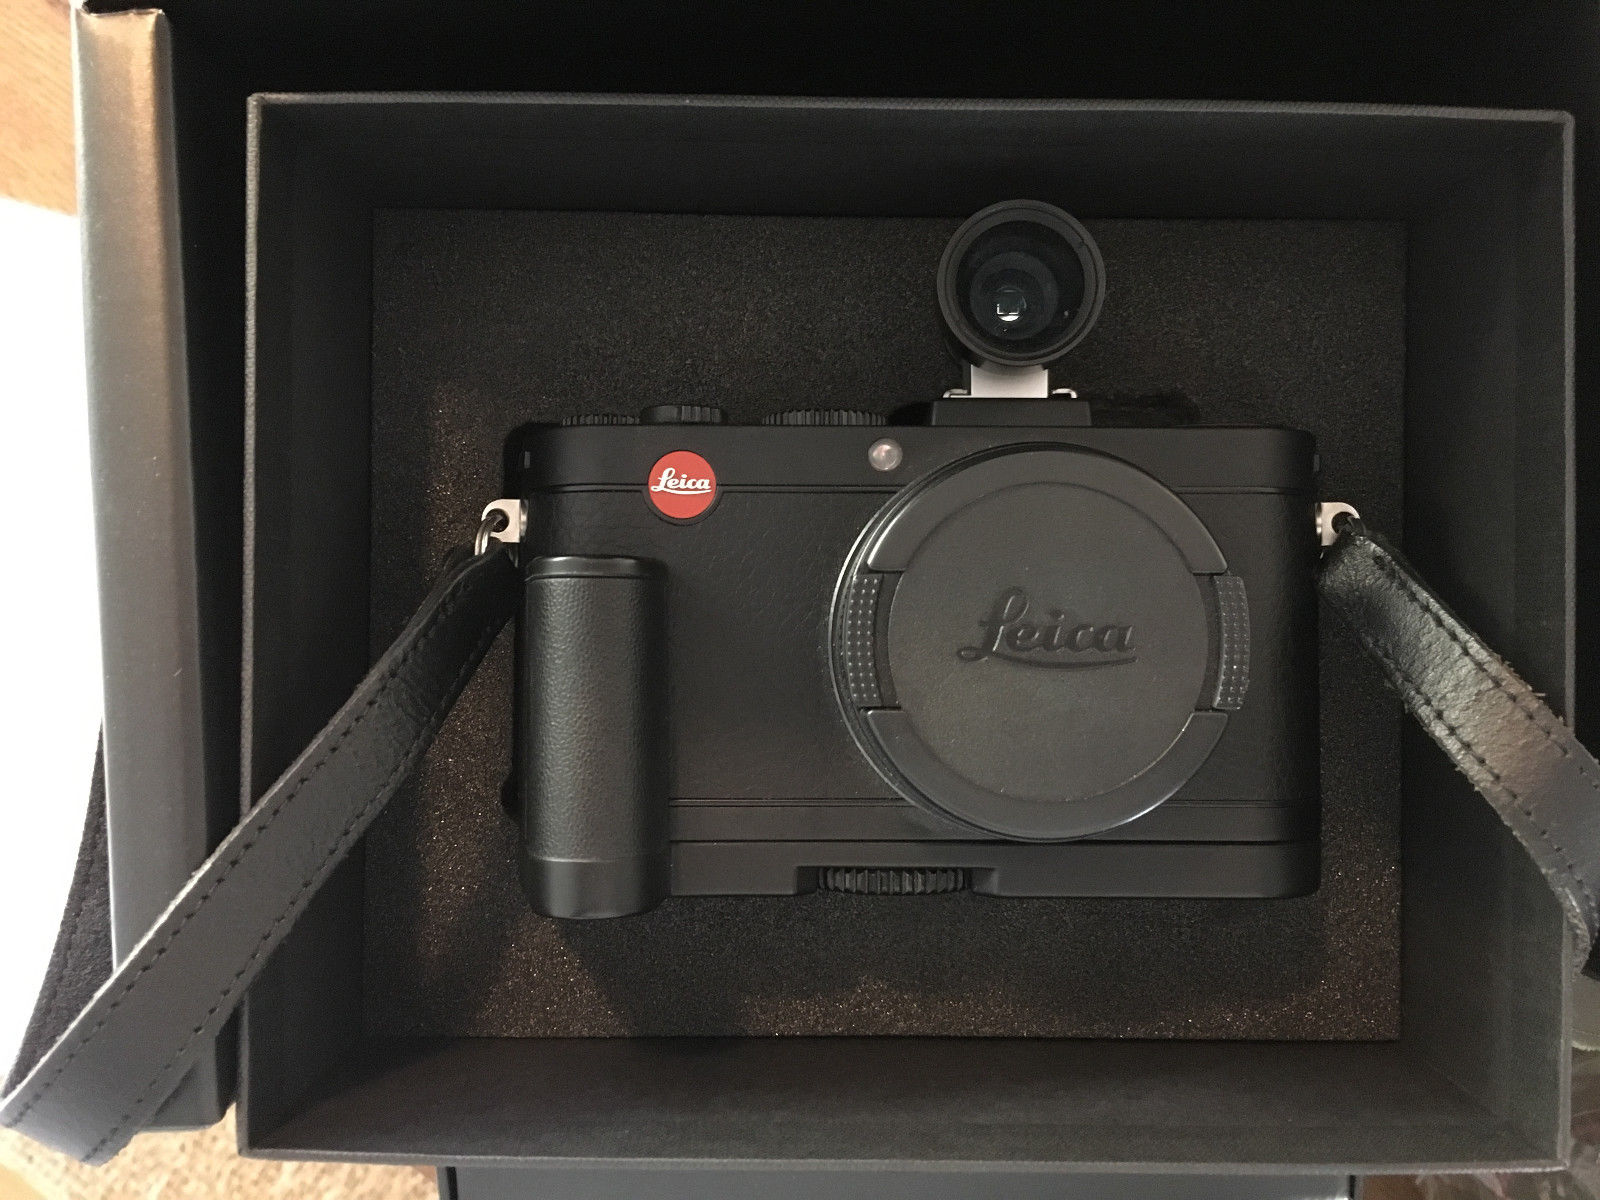 Leica X2 16.2MP Digitalkamera - Schwarz - mit Traumausstattung - Wie neu - OVP